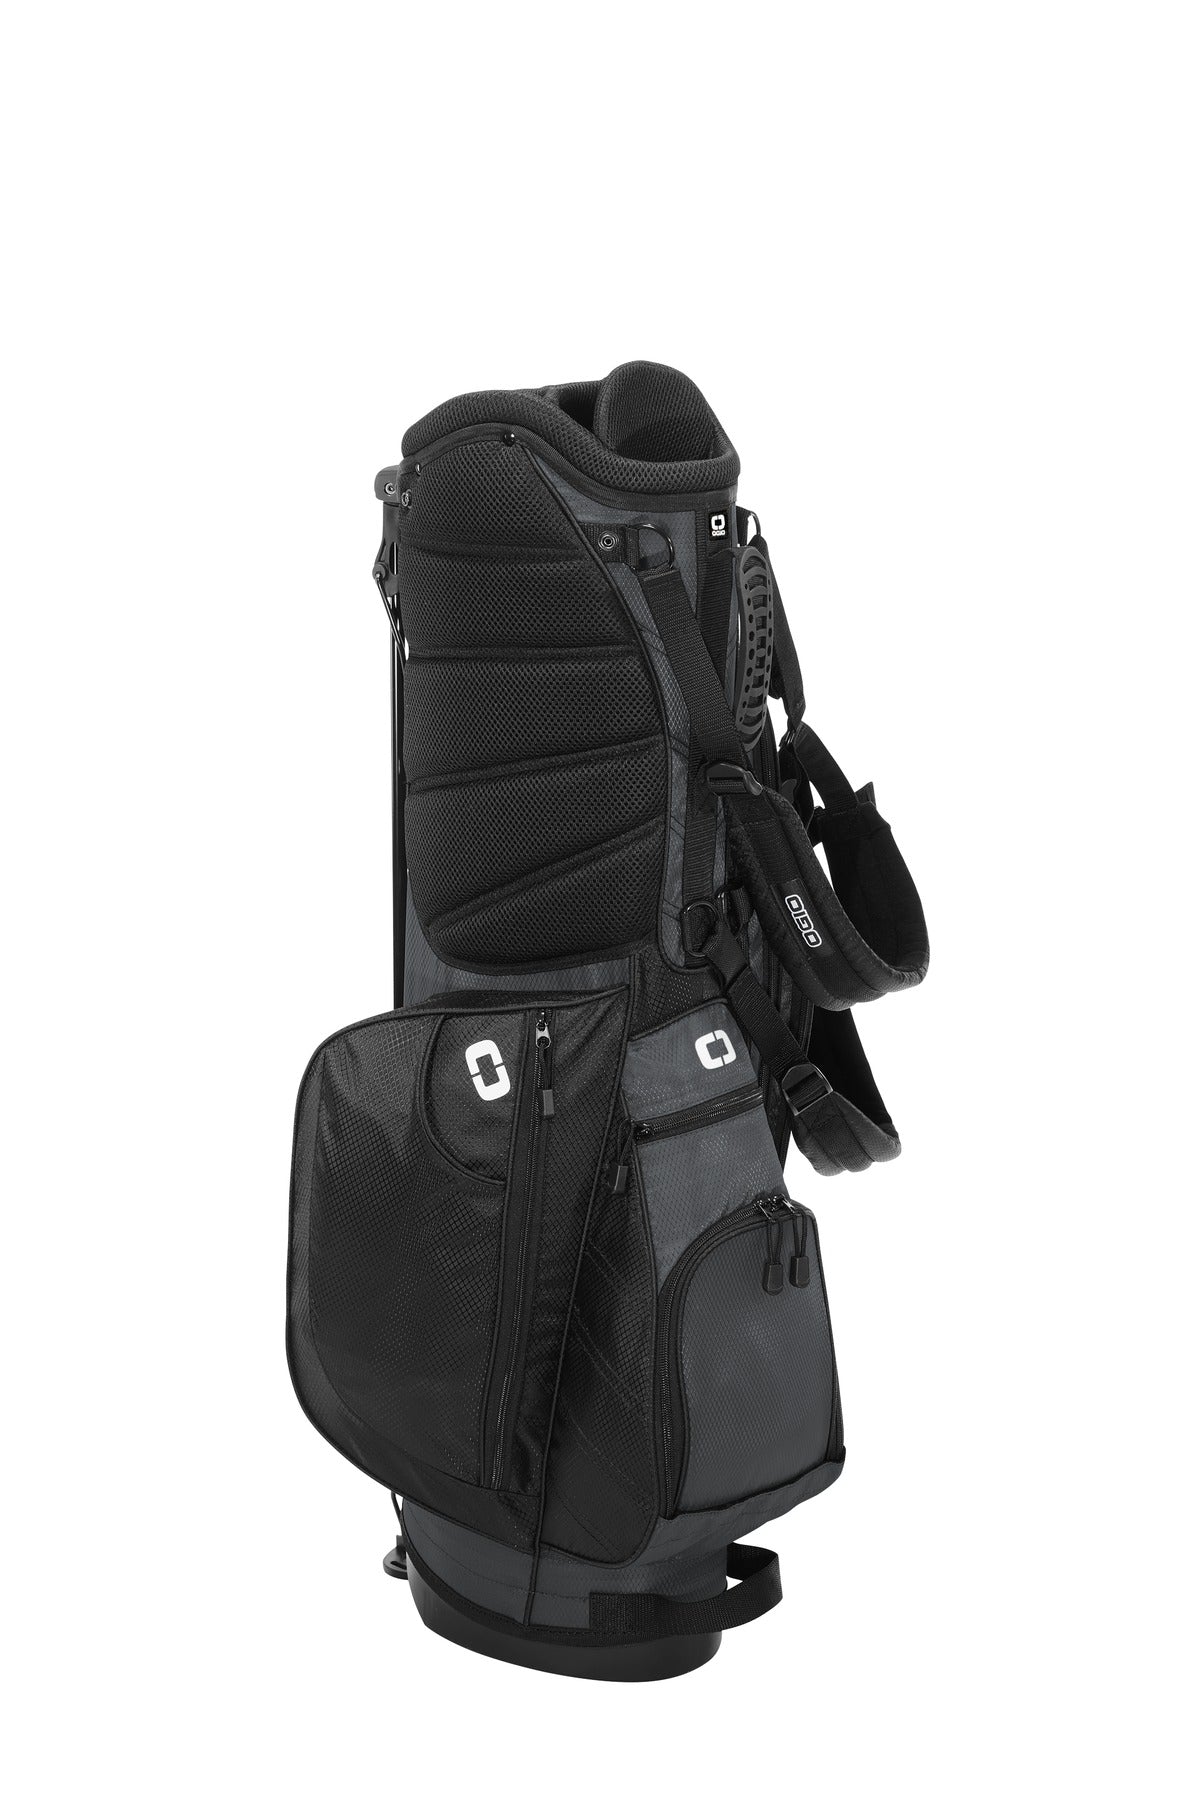 OGIO XL (Xtra-Light) 2.0 Golf Bag. 425043